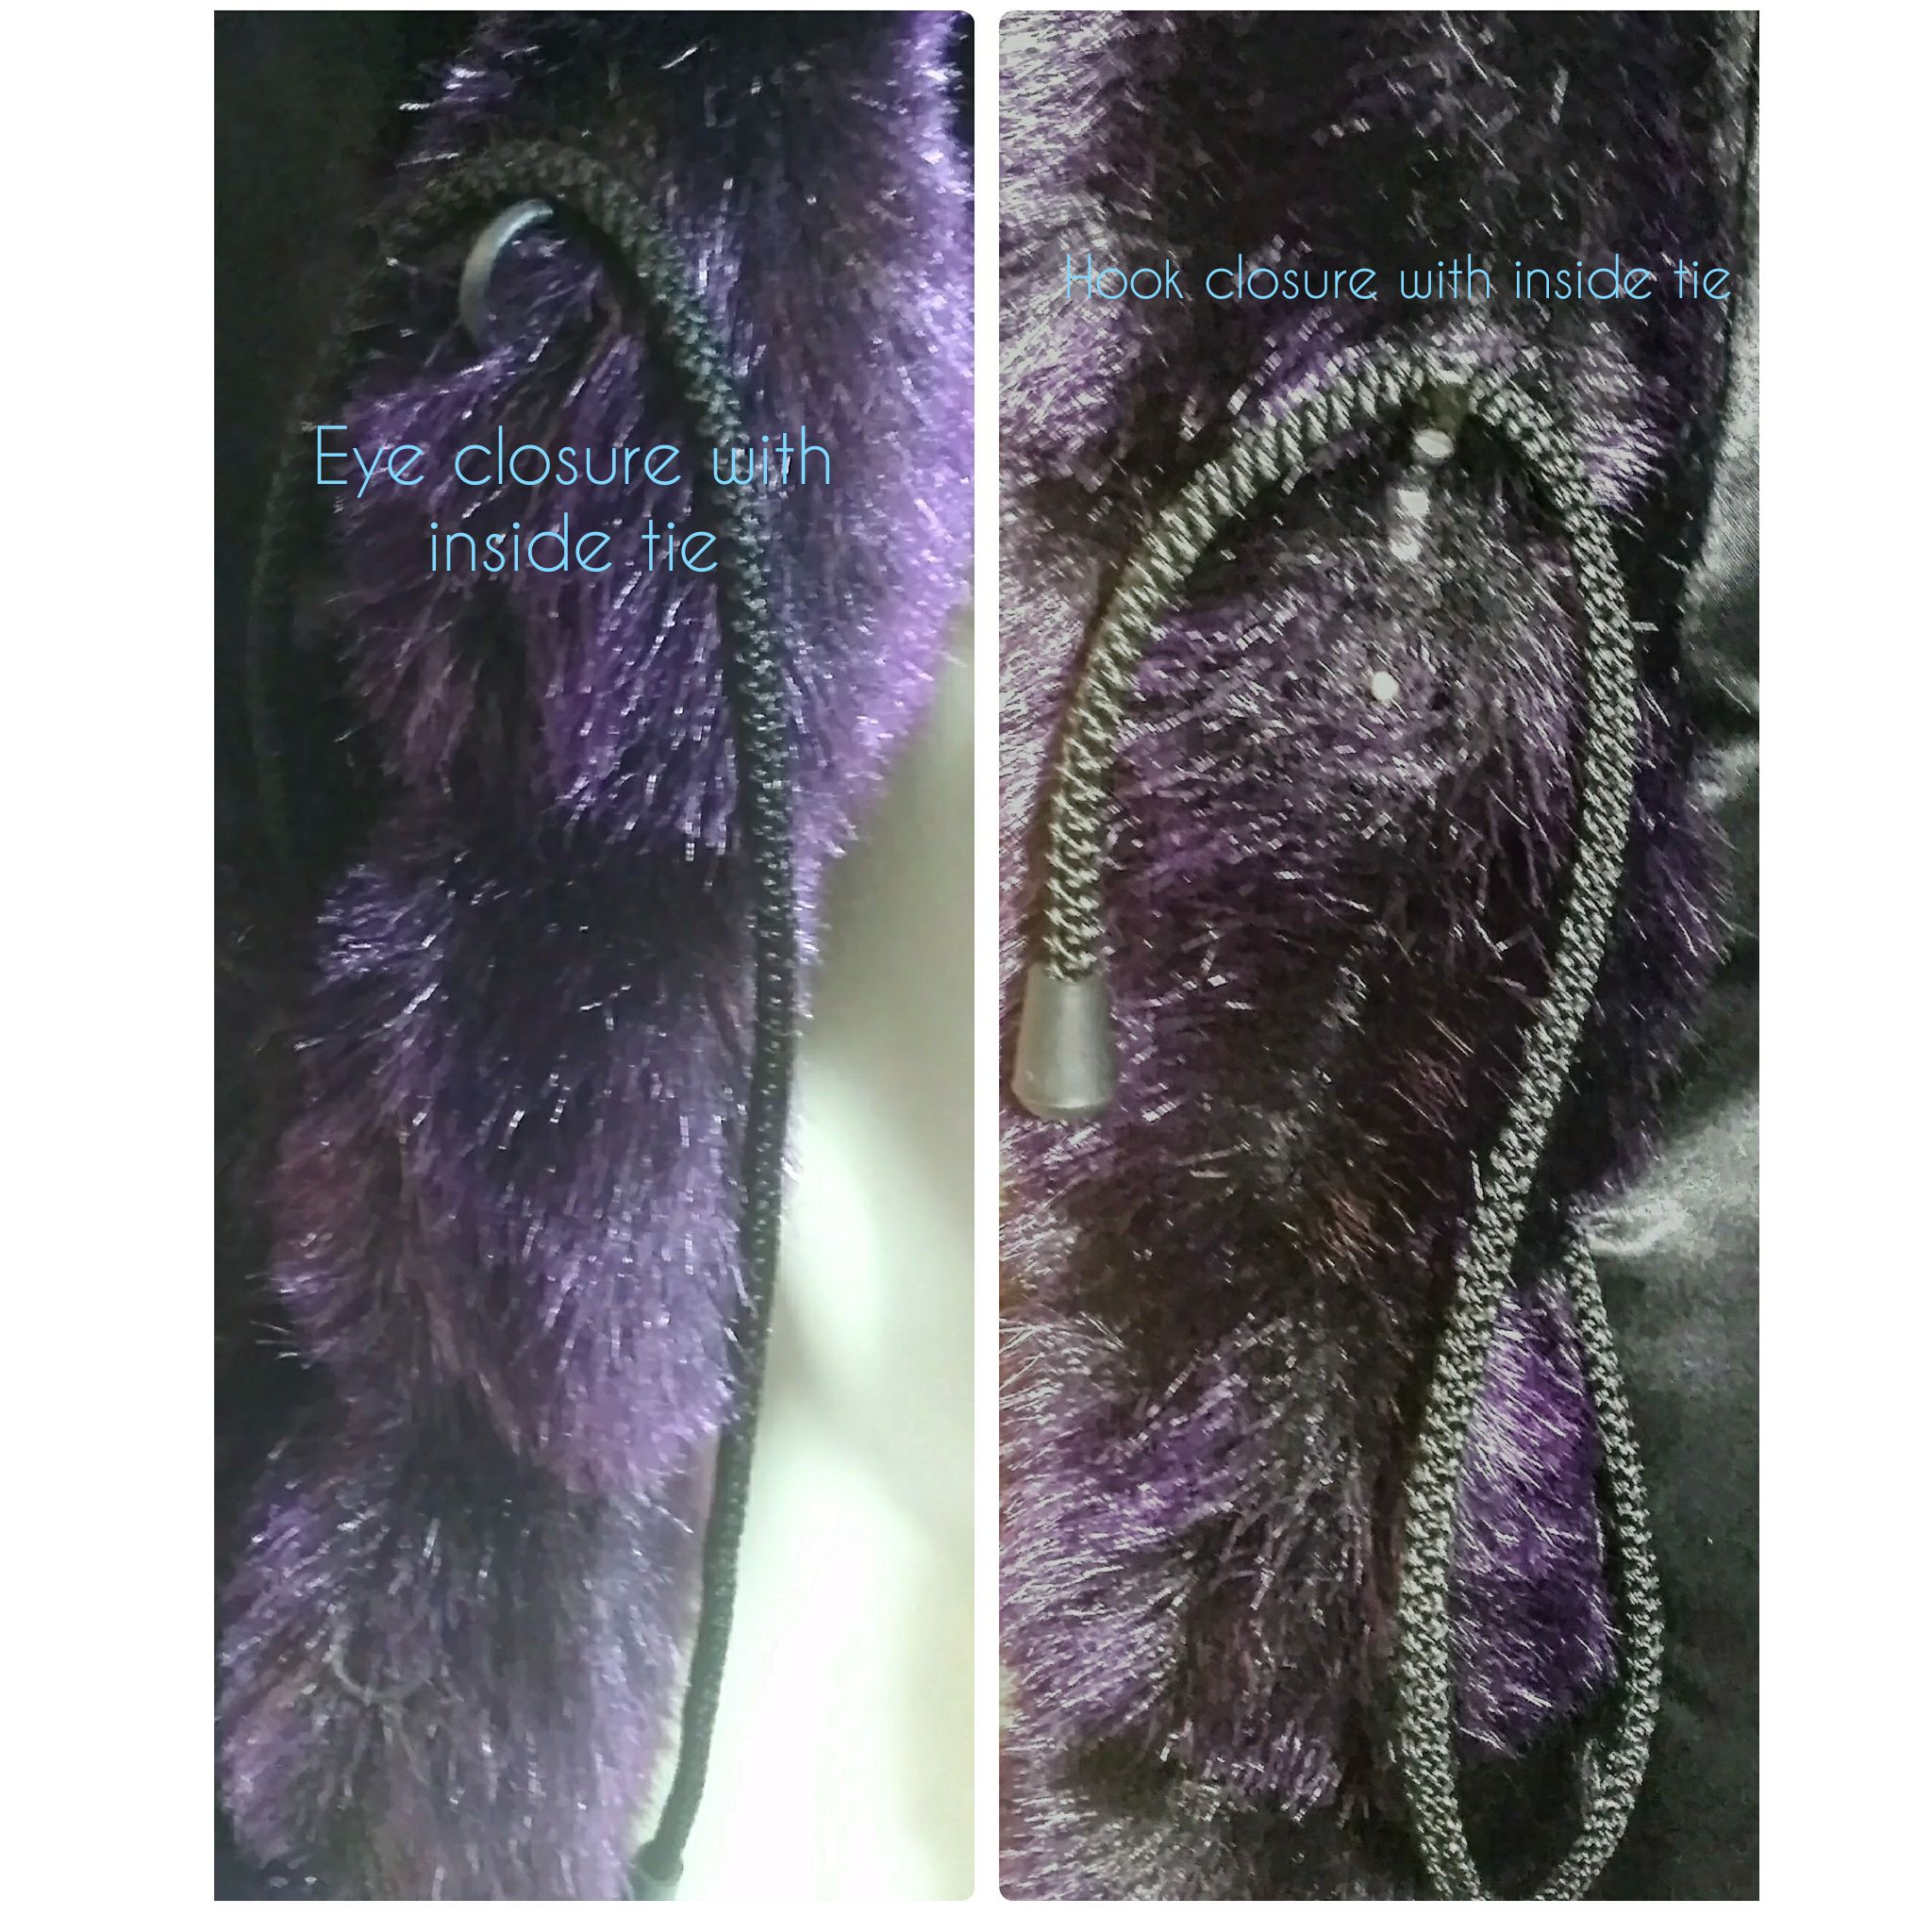 Vintage 1980's Boulevard East Purple Faux Fur Coat "NWT"